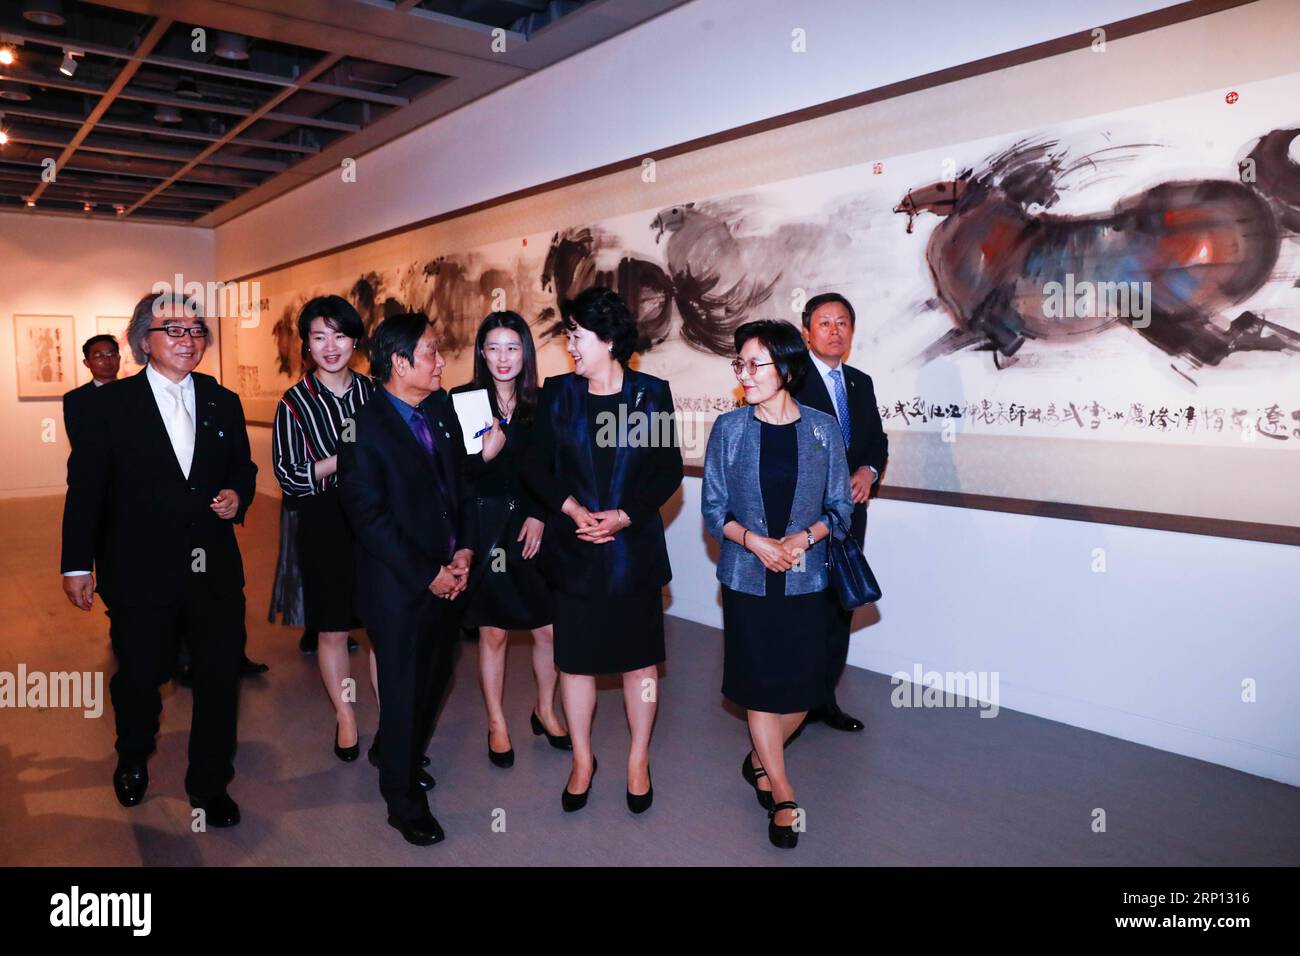 (180606) -- SEOUL, 6 giugno 2018 -- il presidente sudcoreano Moon Jae-in moglie Kim Jung-sook (2nd R, front) accompagnato dall'artista cinese Han Meilin (L front), visita la mostra World of Meilin in Seoul a Seoul, Corea del Sud, 5 giugno 2018. Han Meilin Global Tour Exhibitions - il mondo di Meilin a Seul ha preso il via martedì a Seul. ) cl) COREA DEL SUD-SEOUL-ARTISTA CINESE-HAN MEILIN-MOSTRA WangxJingqiang PUBLICATIONxNOTxINxCHN Foto Stock